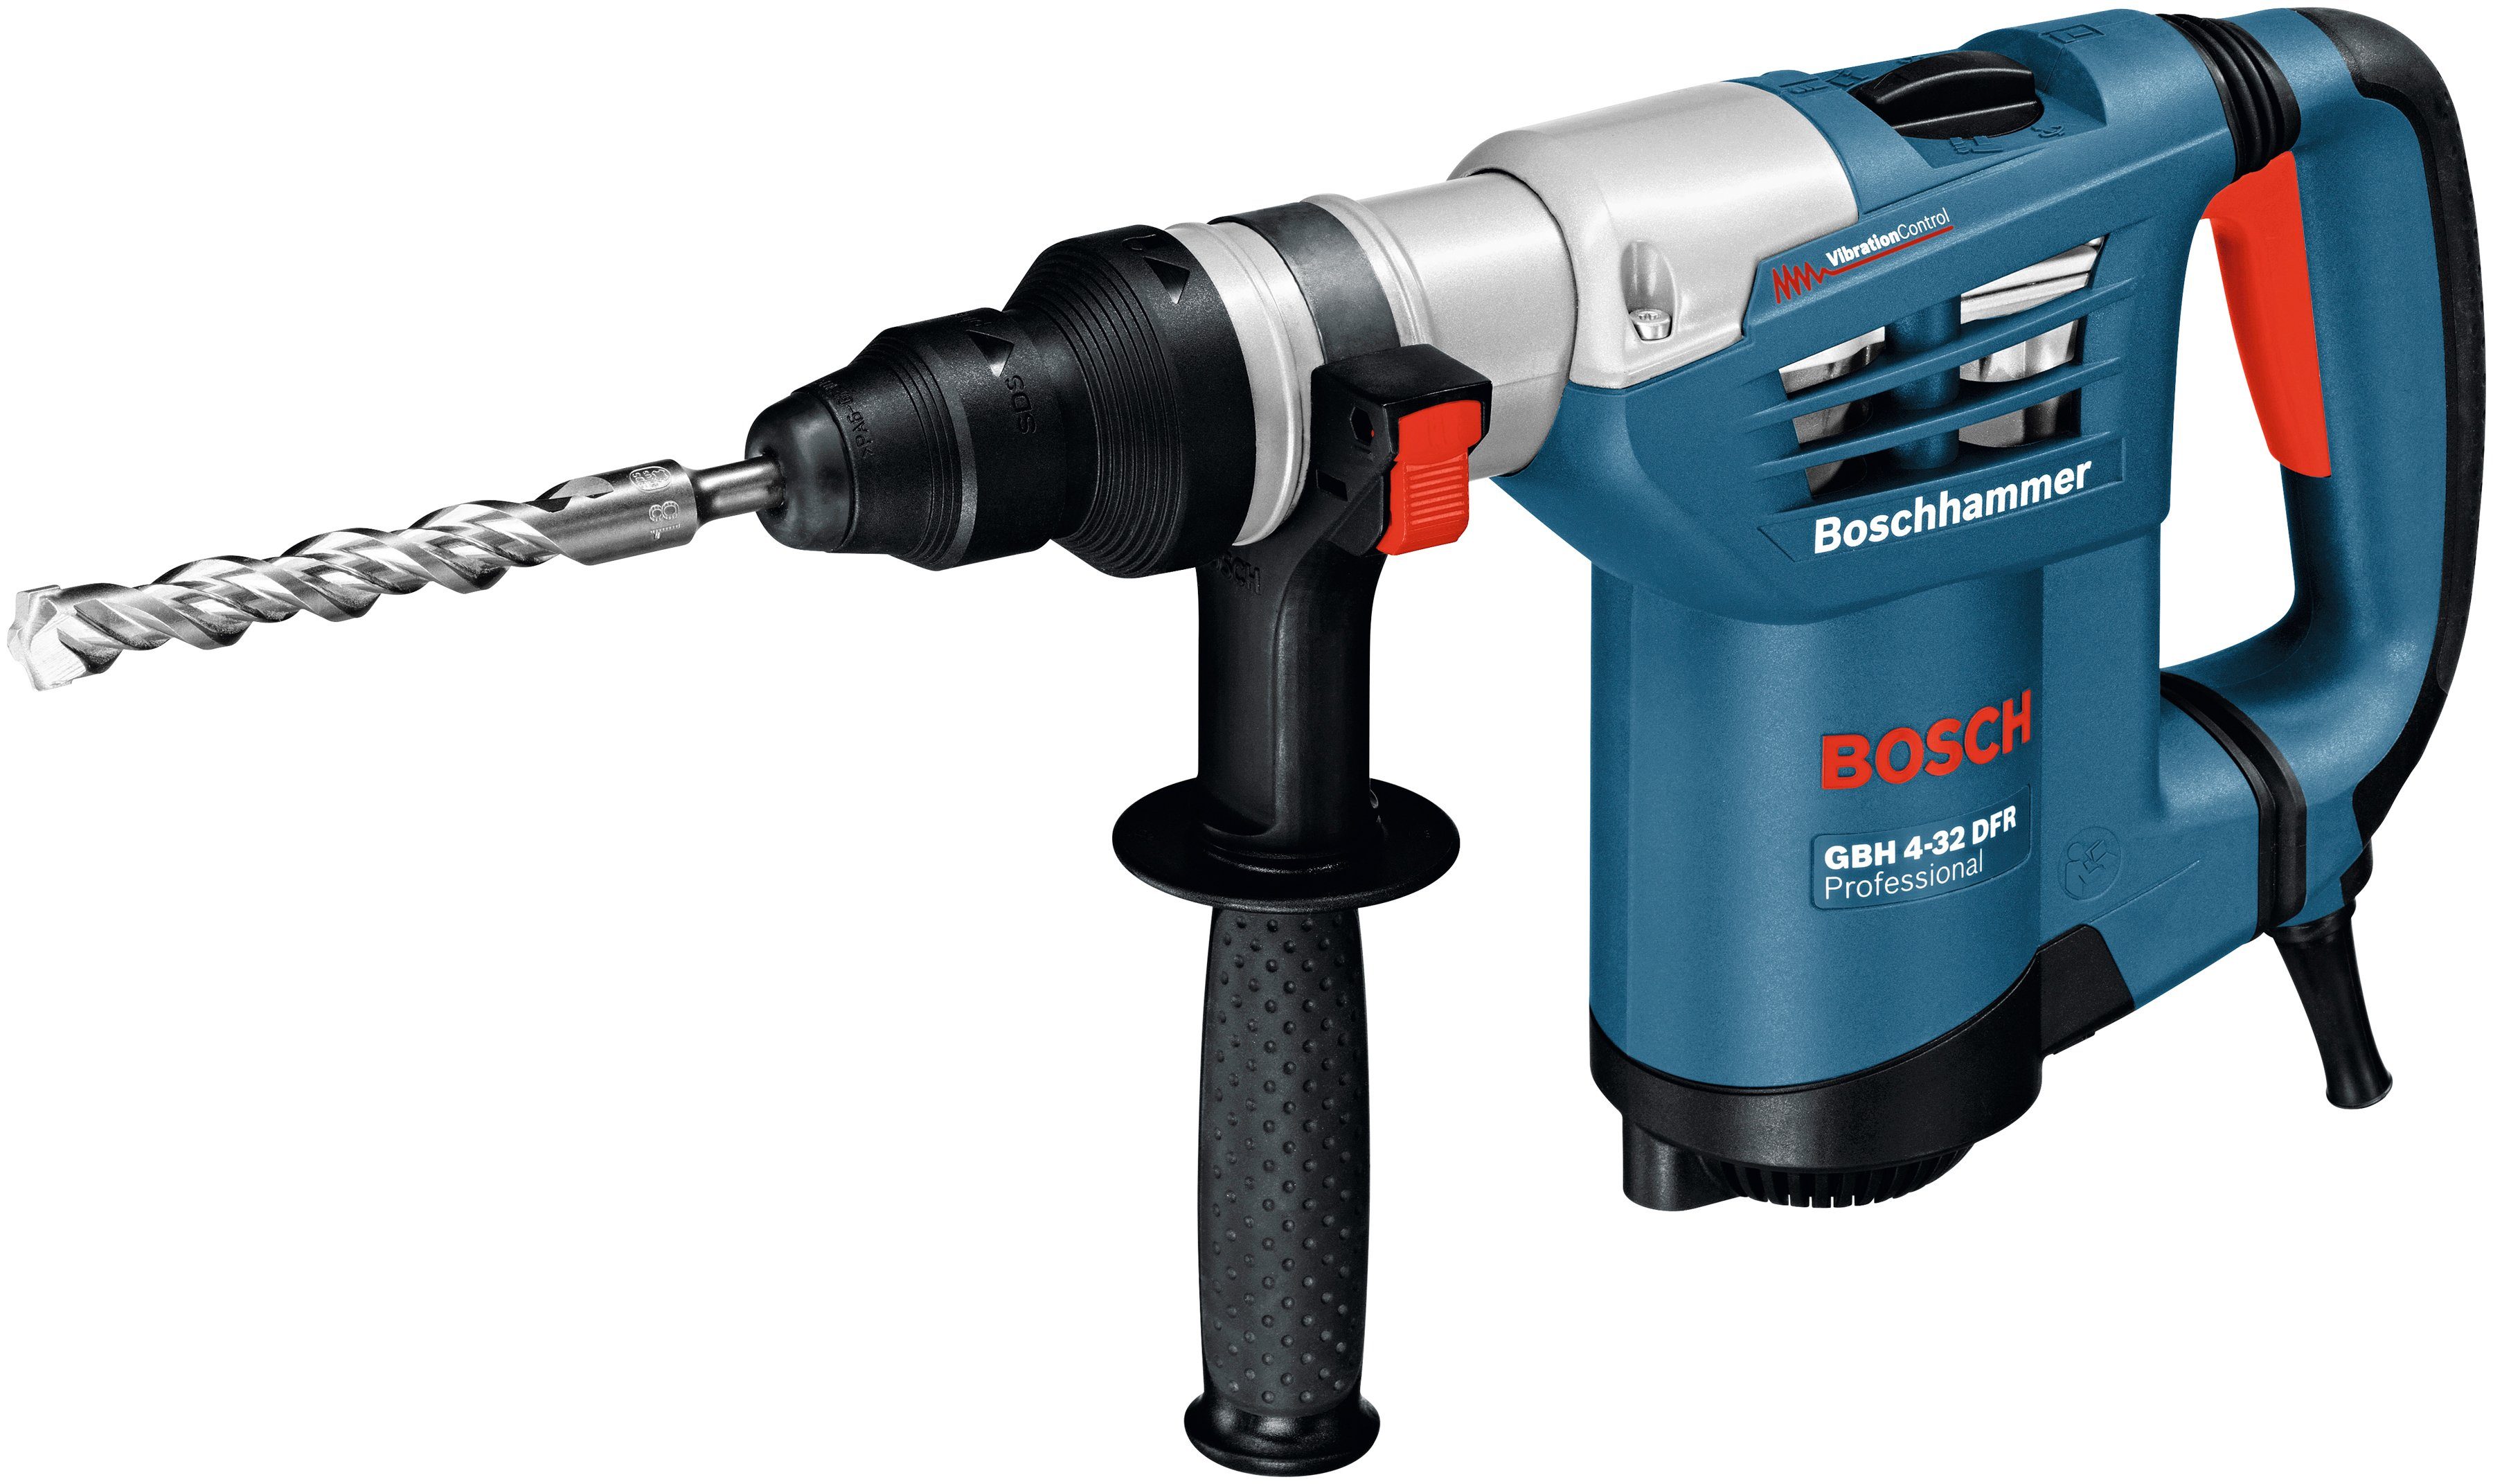 Bosch Professional Bohrhammer GBH U/min, DFR, Schnellspannbohrfutter, max. 4-32 3600 mit Handwerkkoffer